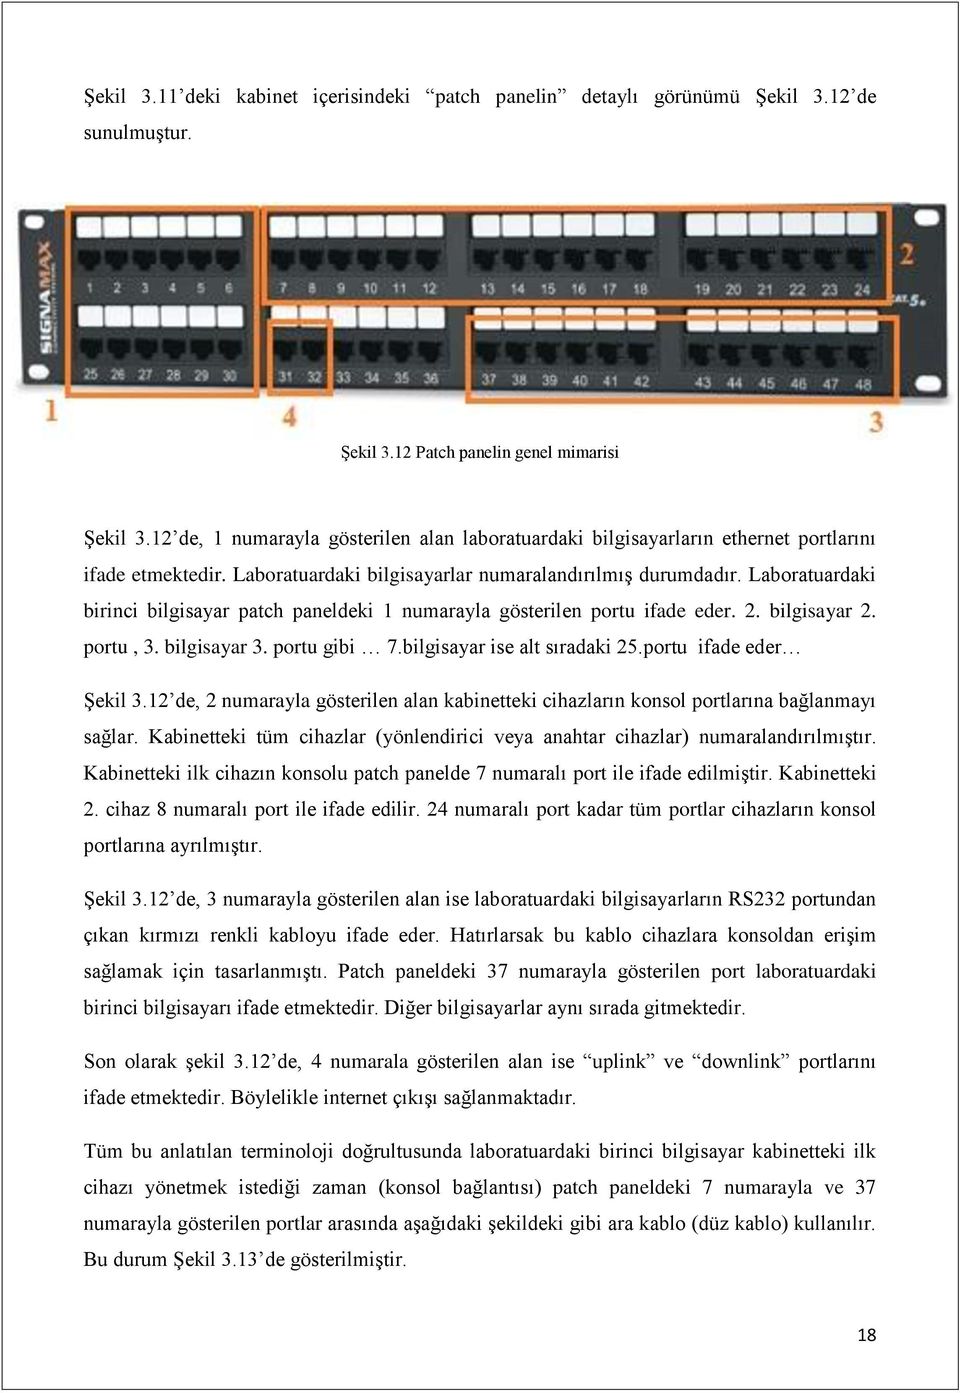 Laboratuardaki birinci bilgisayar patch paneldeki 1 numarayla gösterilen portu ifade eder. 2. bilgisayar 2. portu, 3. bilgisayar 3. portu gibi 7.bilgisayar ise alt sıradaki 25.